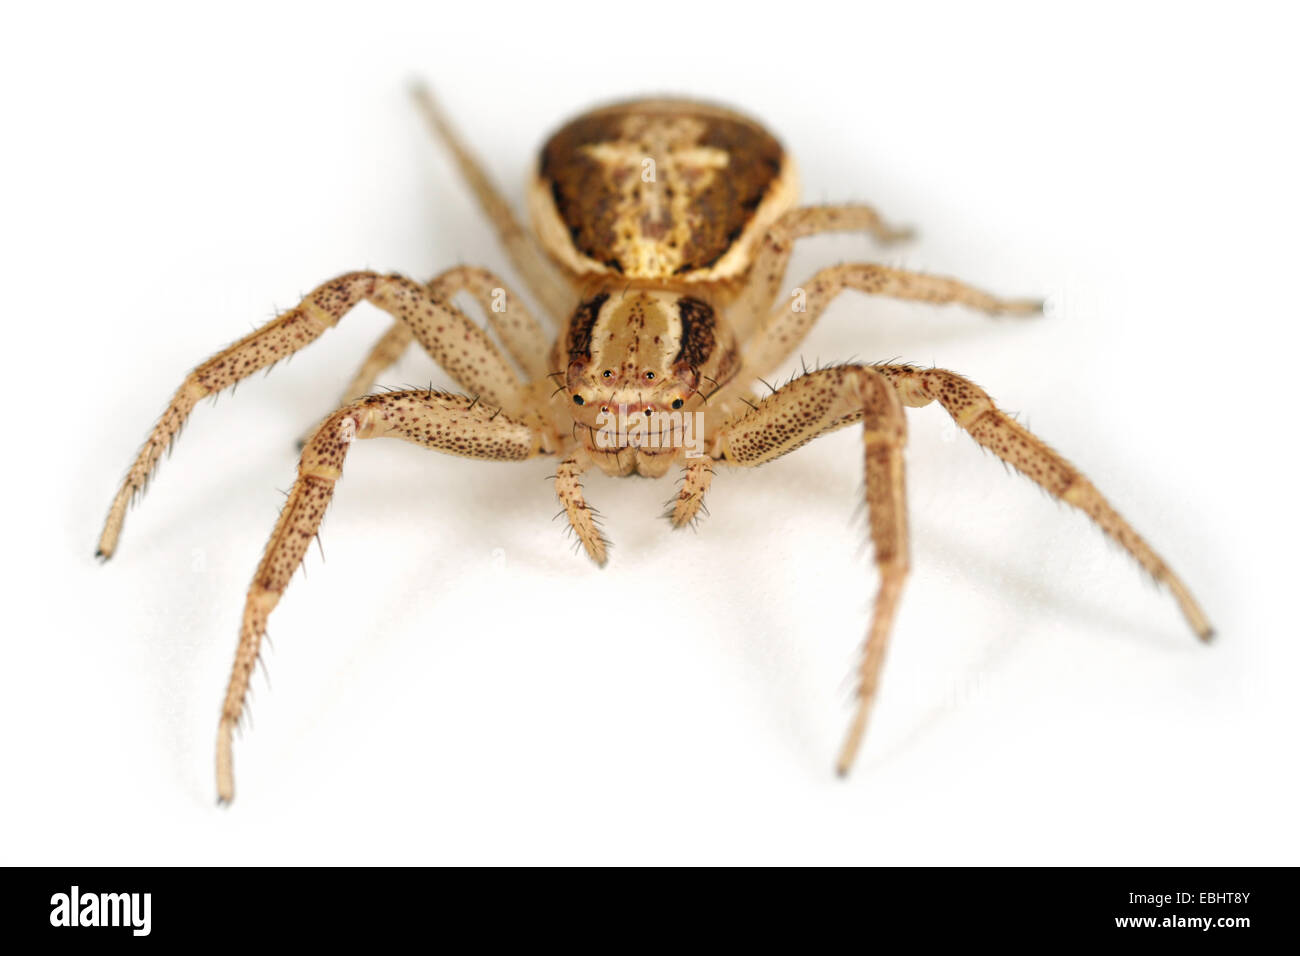 (Xysticus ulmi) Weibliche Xysticus ulmi Spinne auf weißem Hintergrund. Familie, thomisidae Crab Spiders. Stockfoto